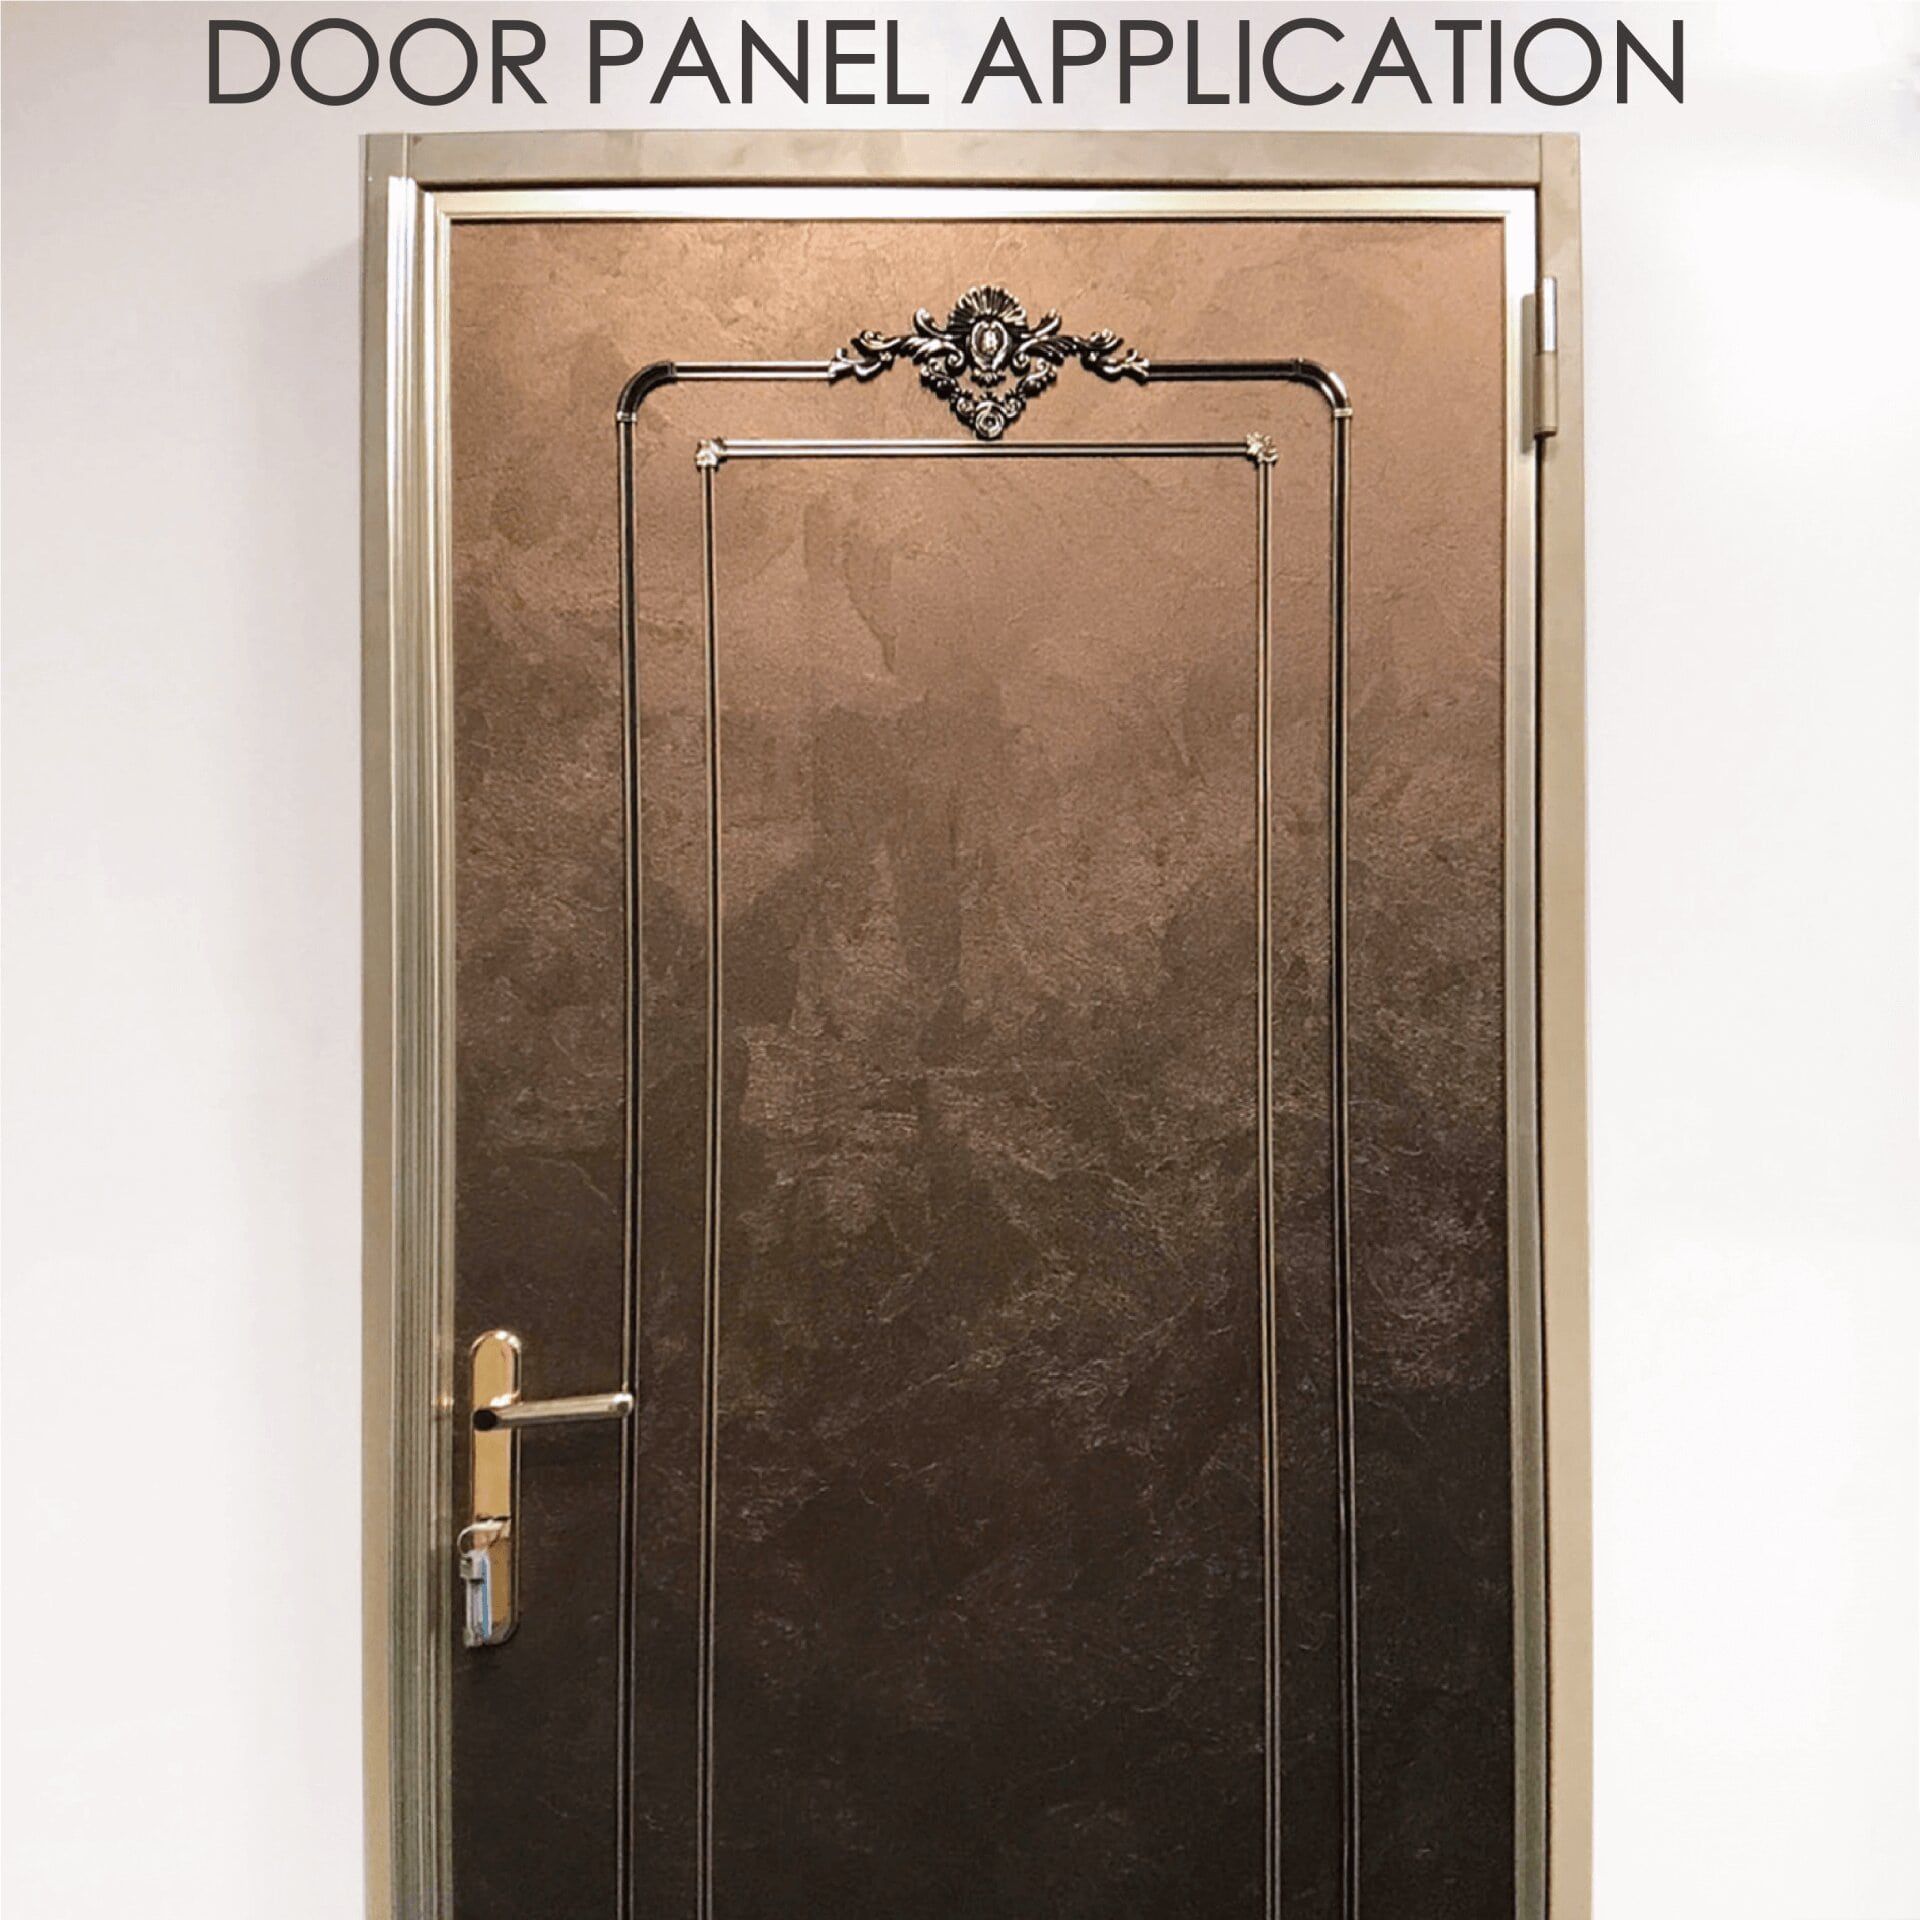 Reemplazar puertas de madera con metal laminado puede aumentar la seguridad y durabilidad.